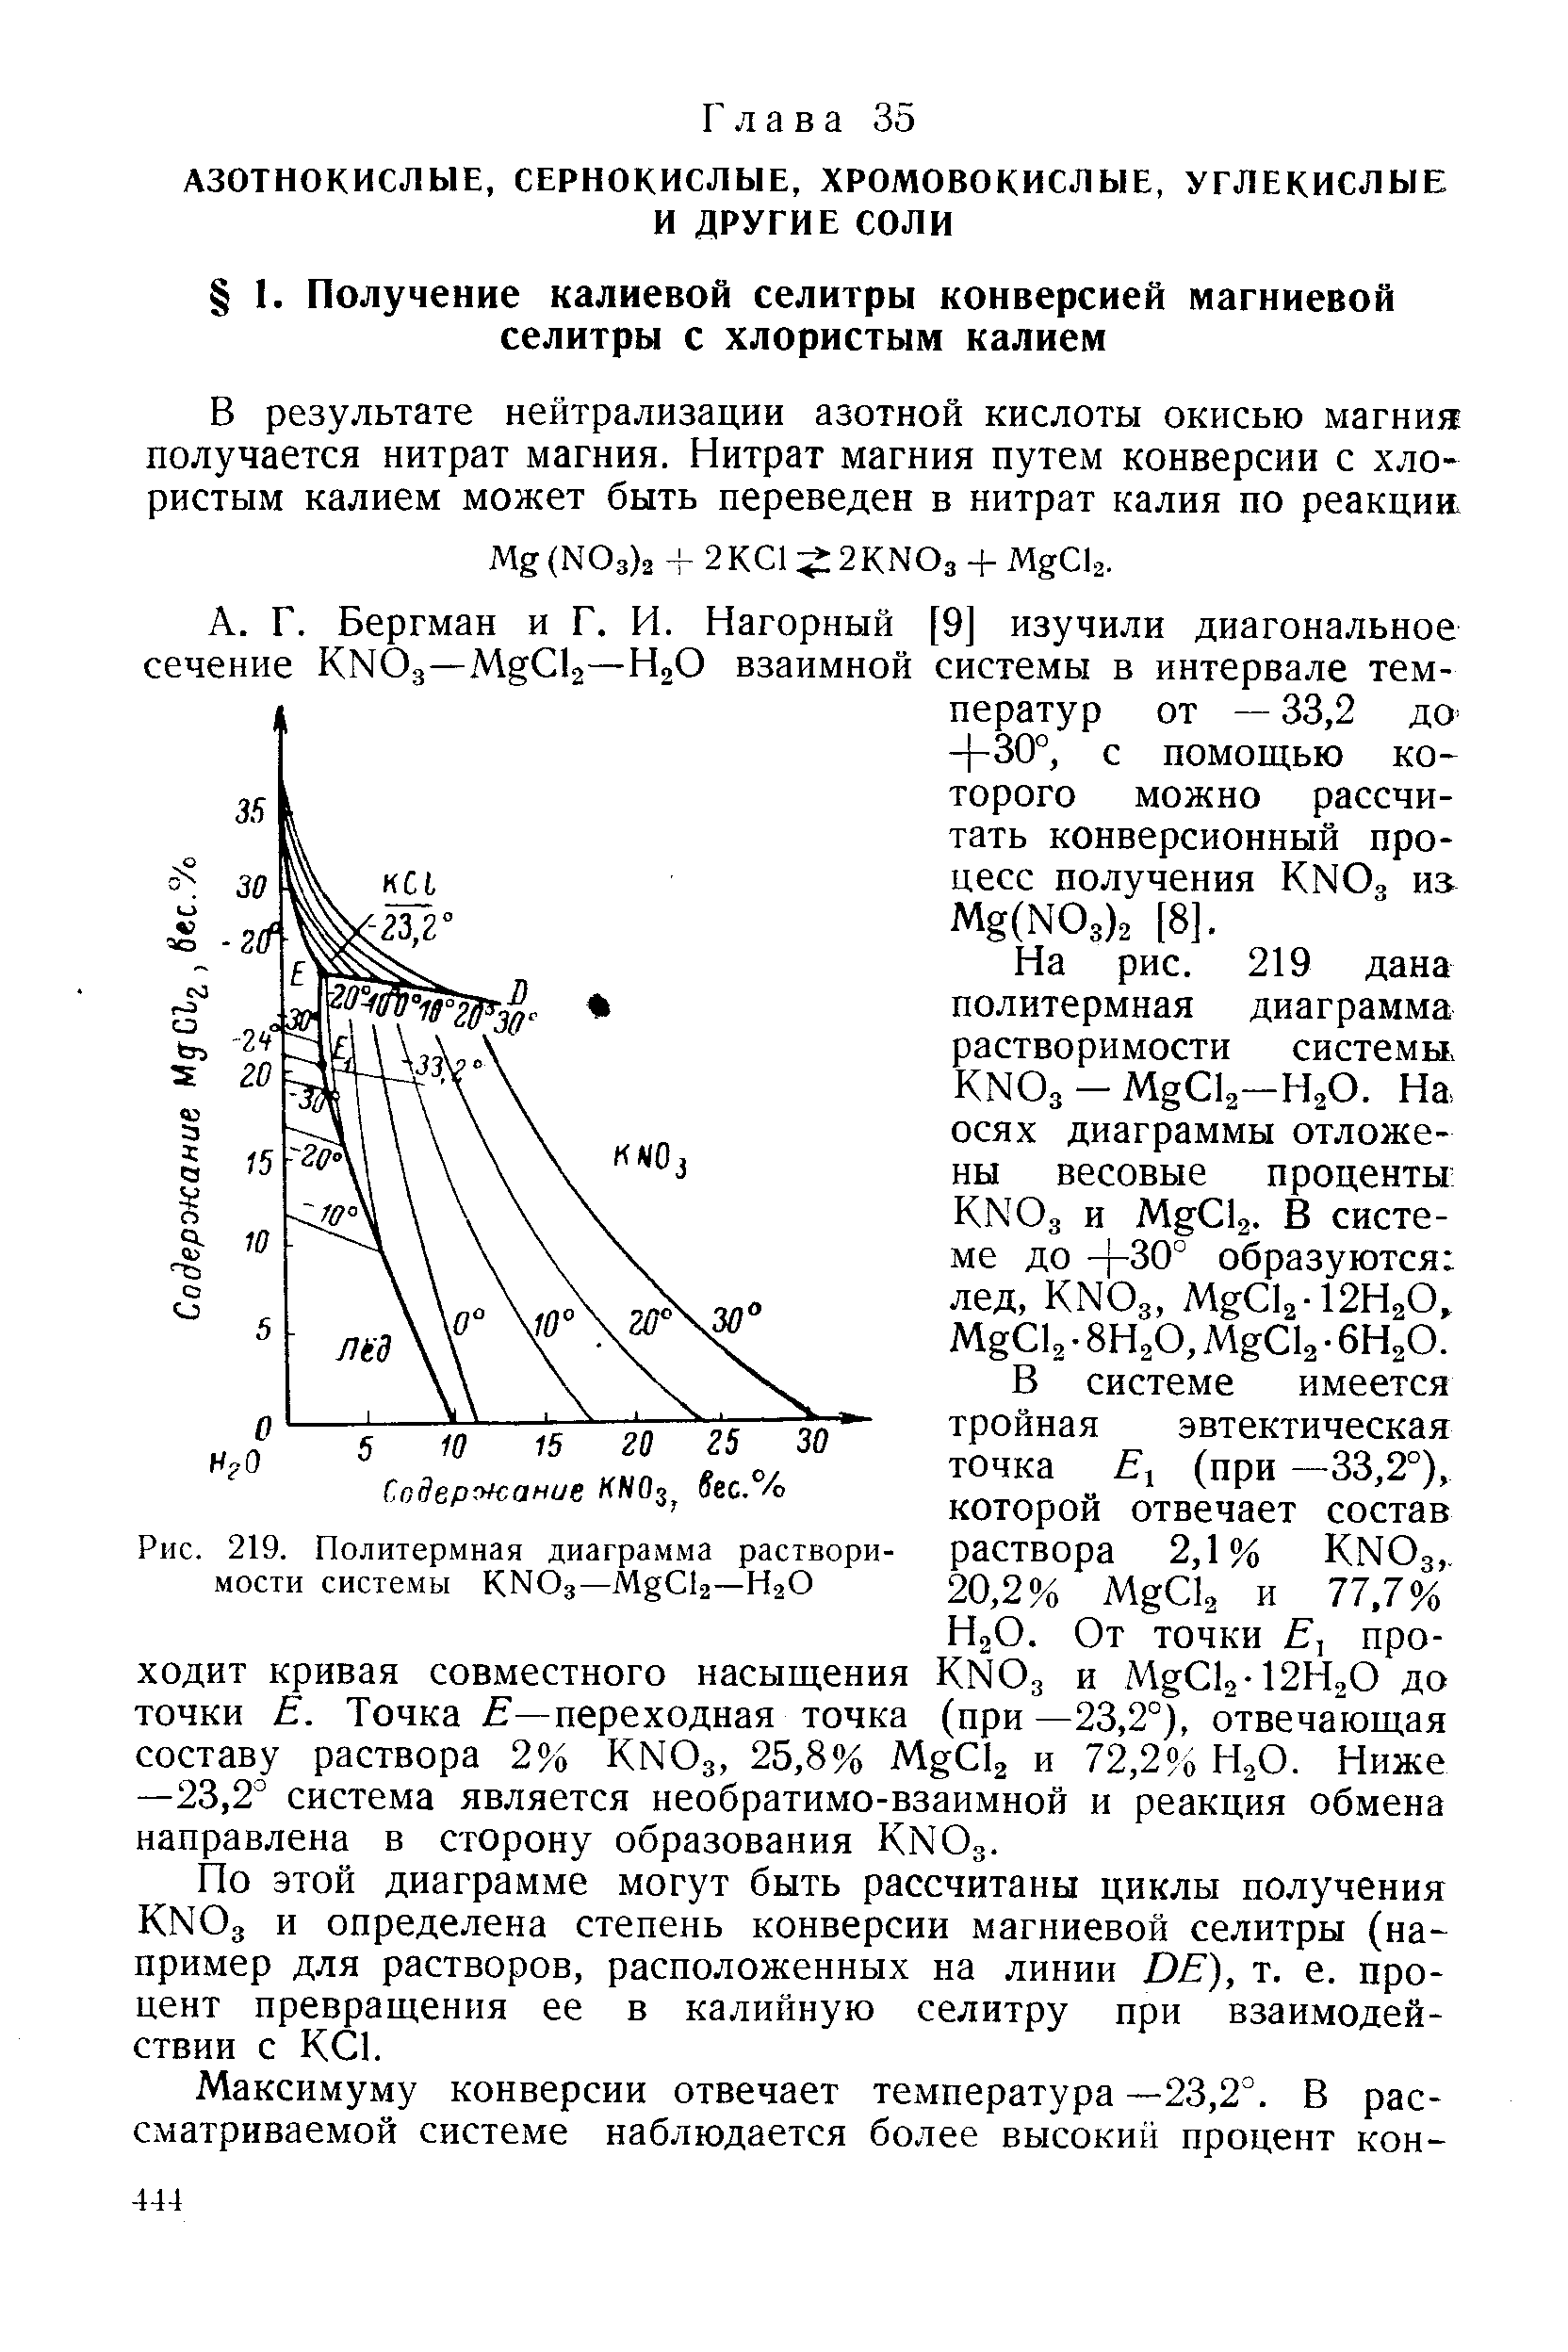 По этой диаграмме могут быть рассчитаны циклы получения KNO3 и определена степень конверсии магниевой селитры (например для растворов, расположенных на линии DE), т. е. процент превращения ее в калийную селитру при взаимодействии с КС1.